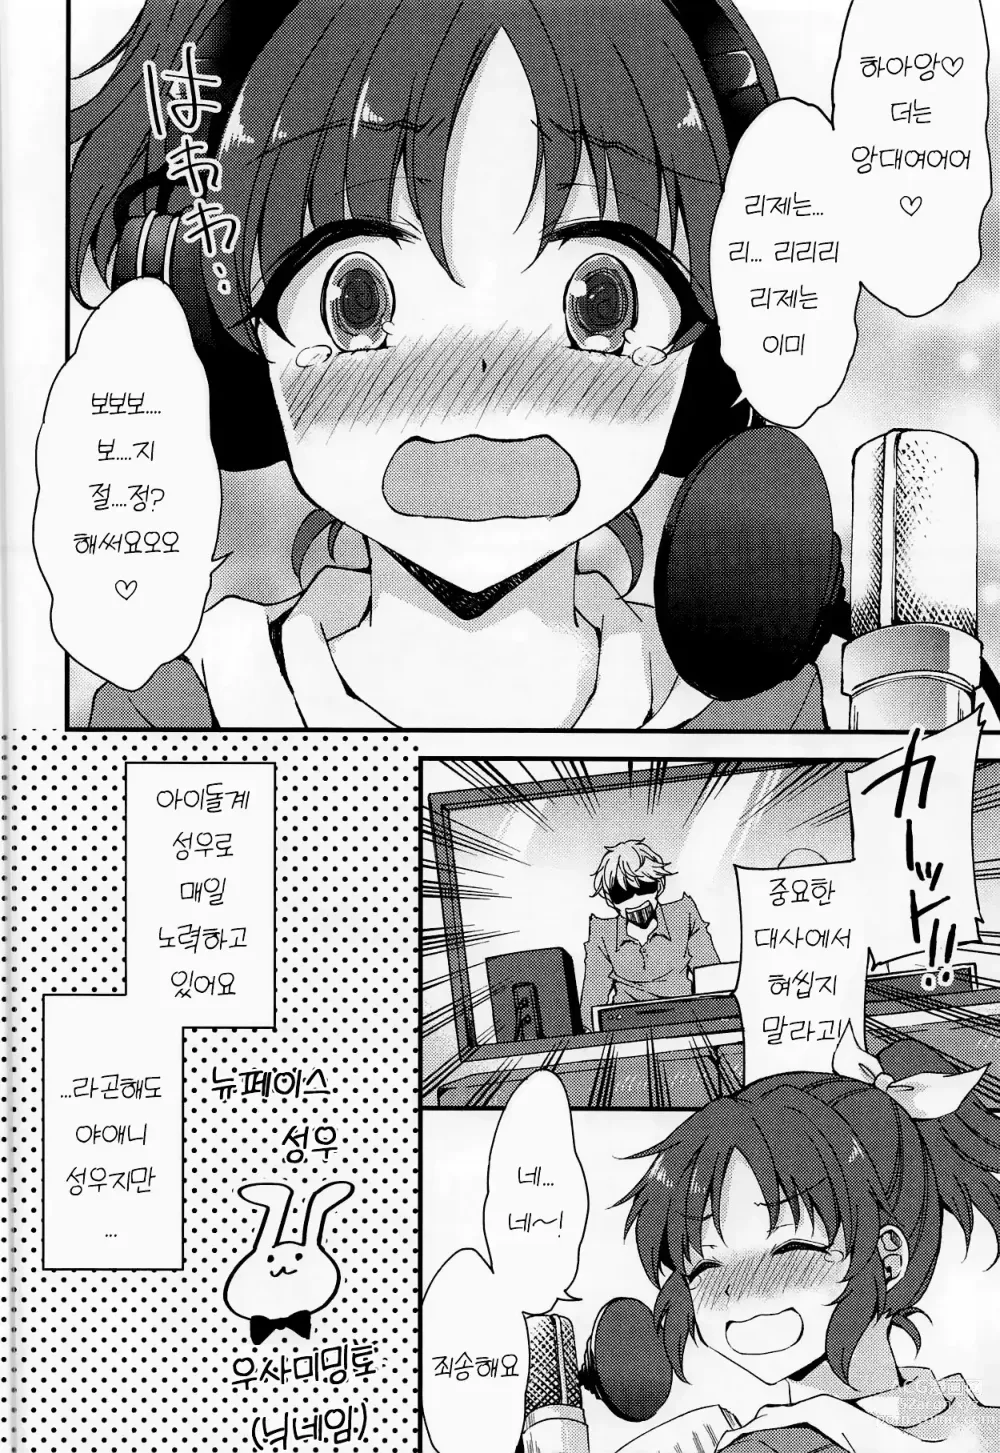 Page 3 of doujinshi 나나, 힘내겠습니다!